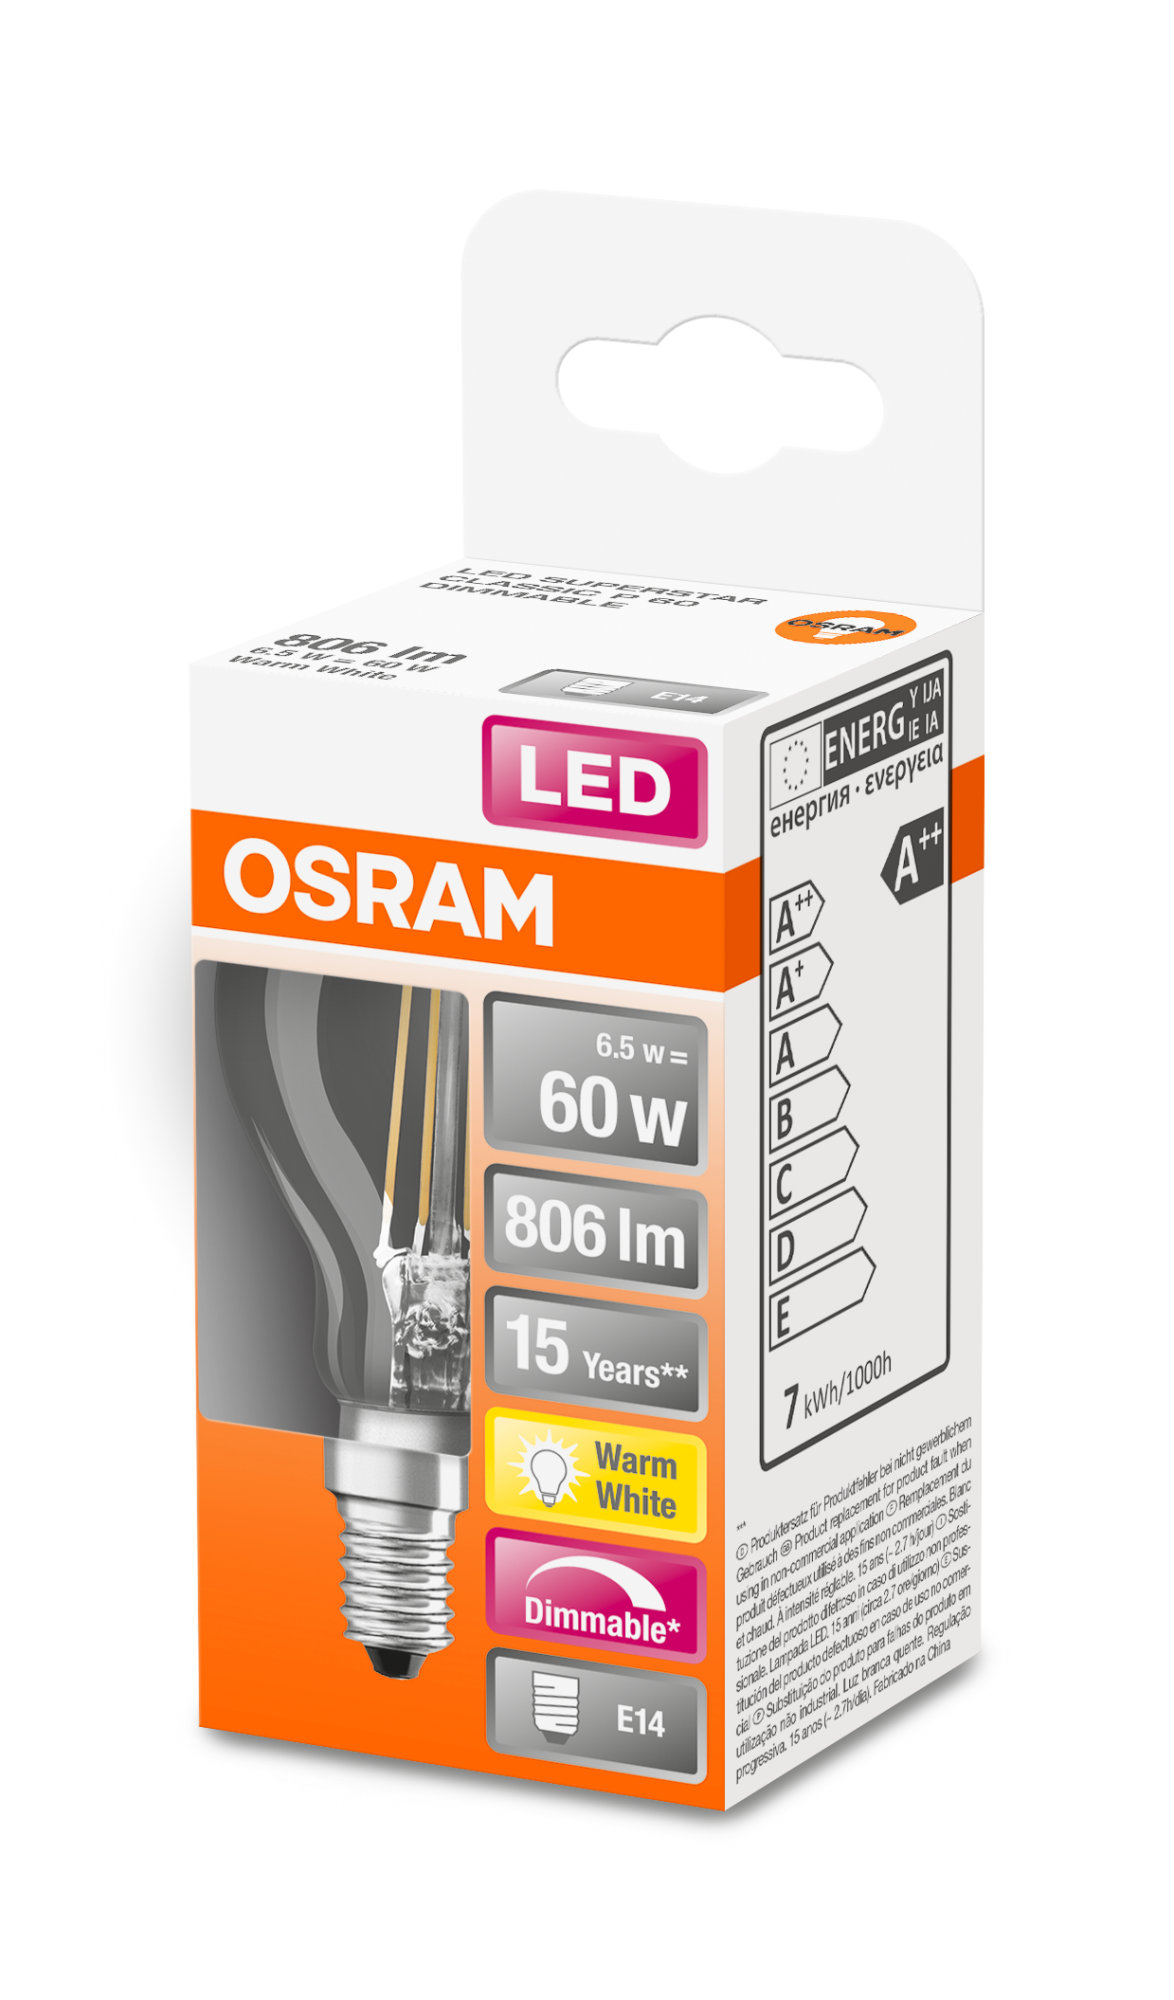 Osram LED SUPERSTAR FILAMENT clear DIM CLP 60 5W 827 E14 806lm 2700K